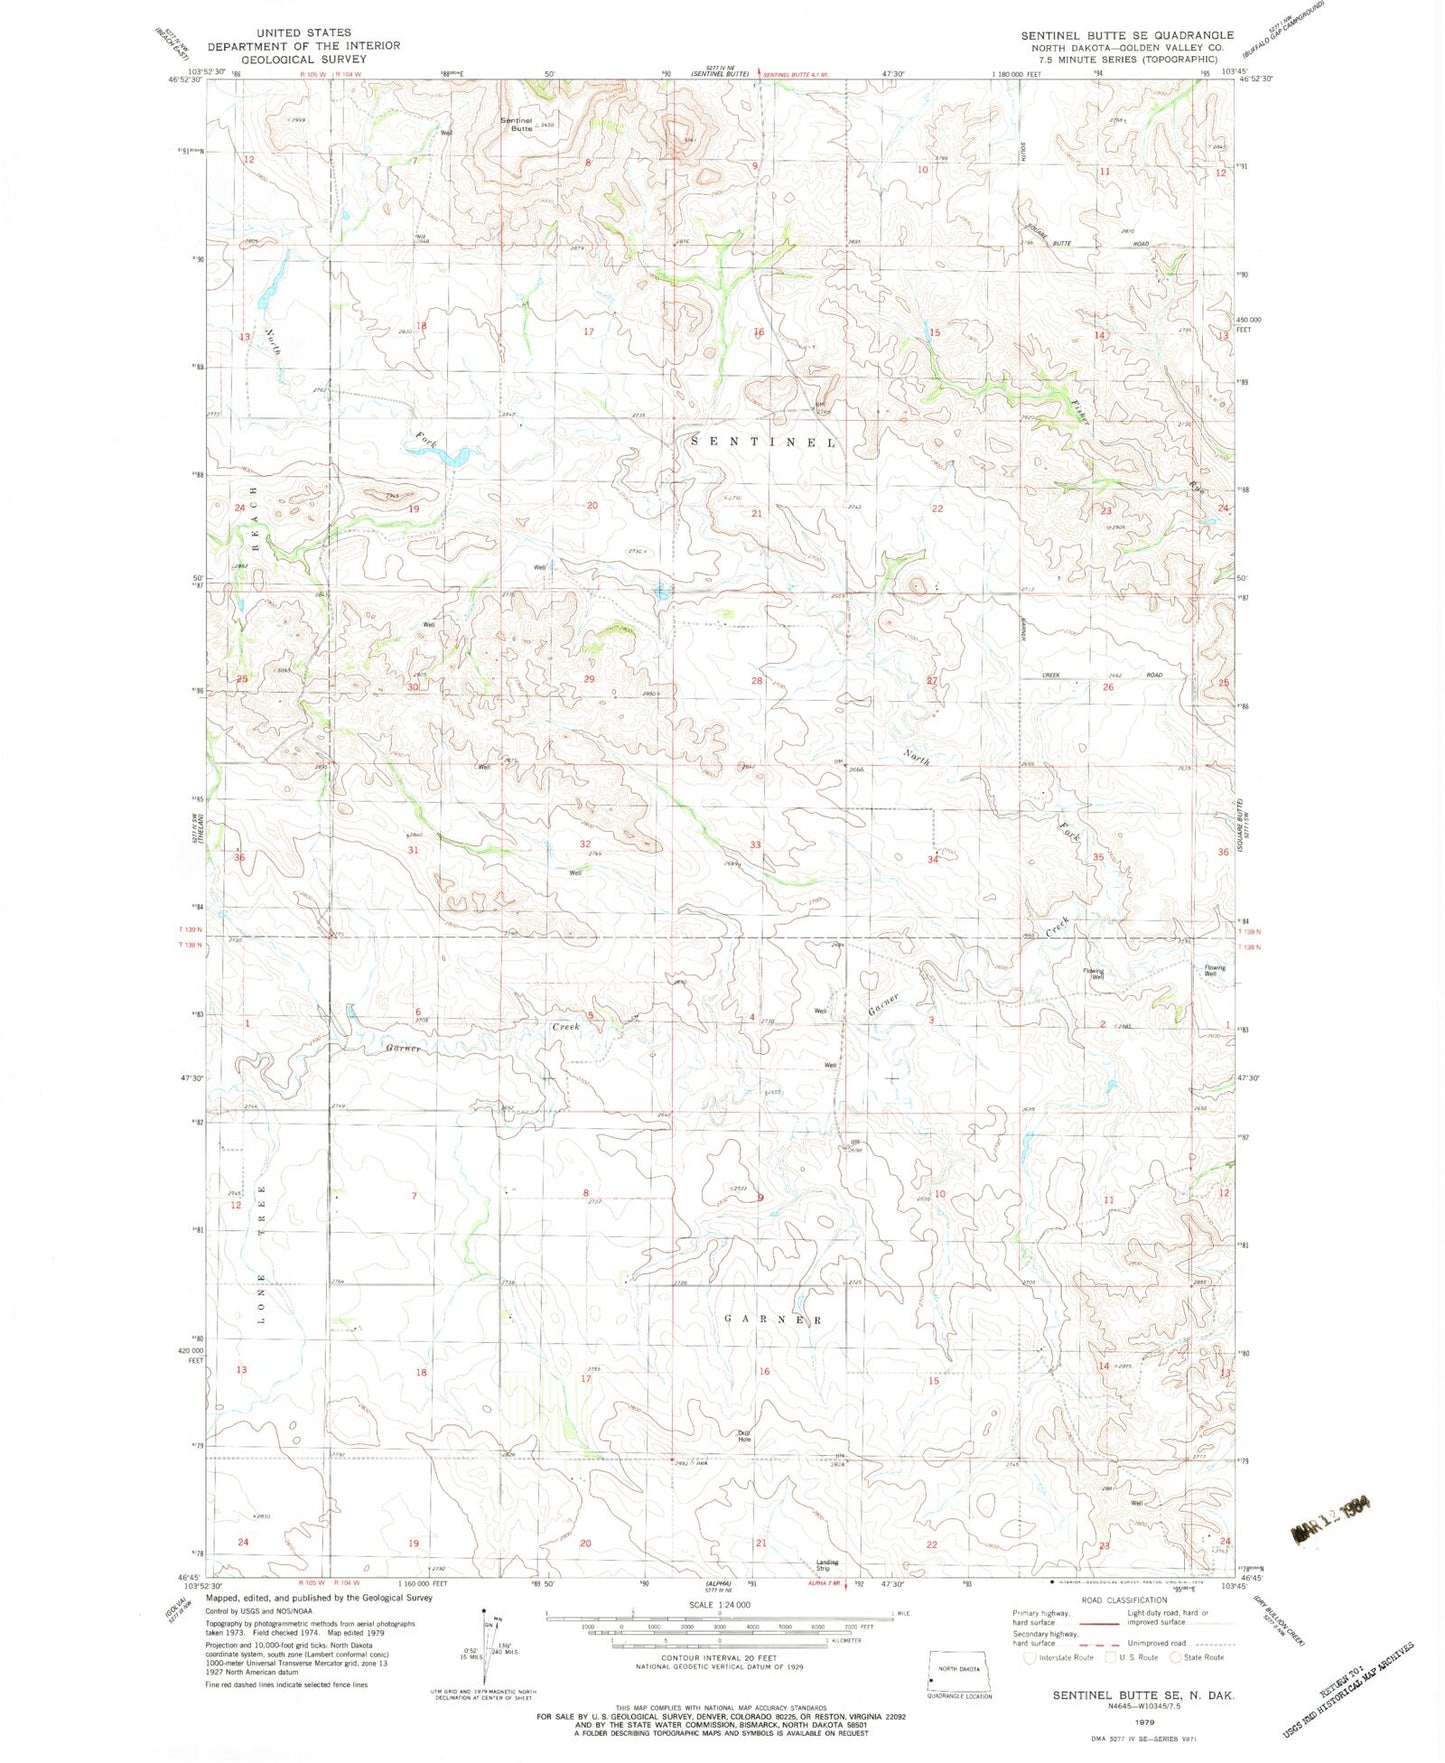 Classic USGS Sentinel Butte SE North Dakota 7.5'x7.5' Topo Map Image